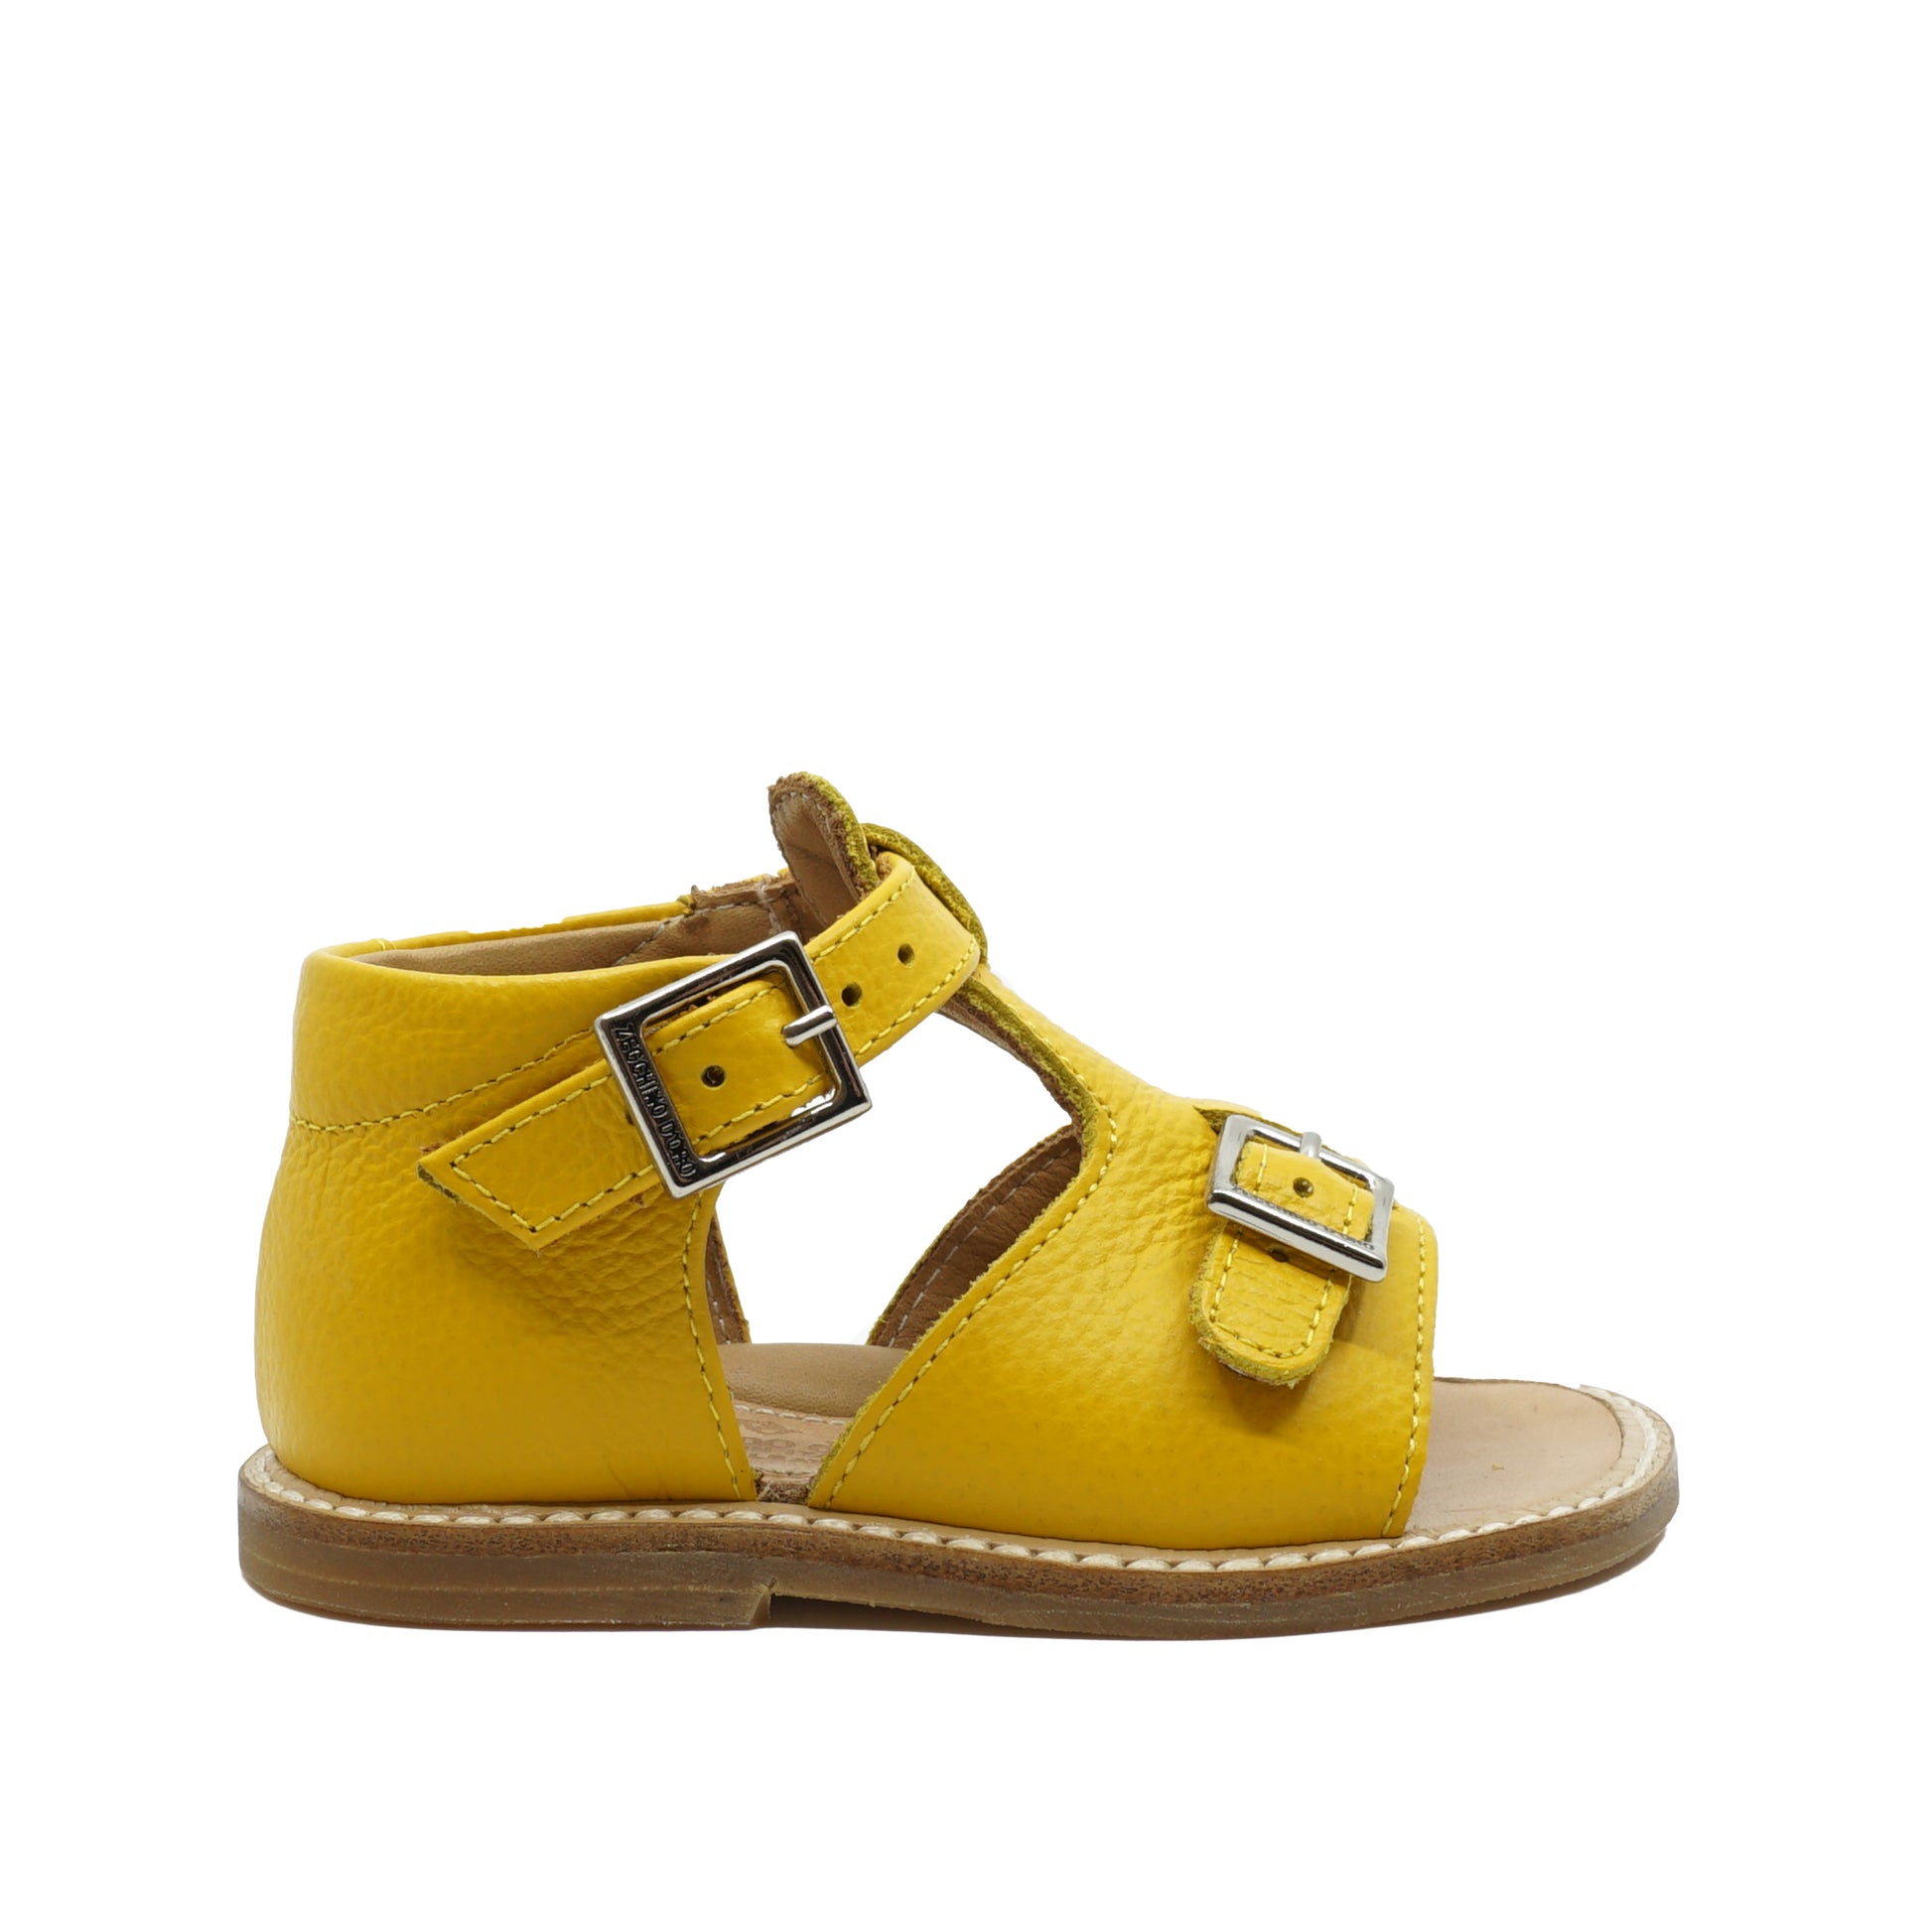 Gele baby sandalen in leder met gespsluiting van het Italiaanse merk Zecchino d’Oro. Verkrijgbaar bij kinderschoenwinkel September Stories in Berchem, Antwerpen